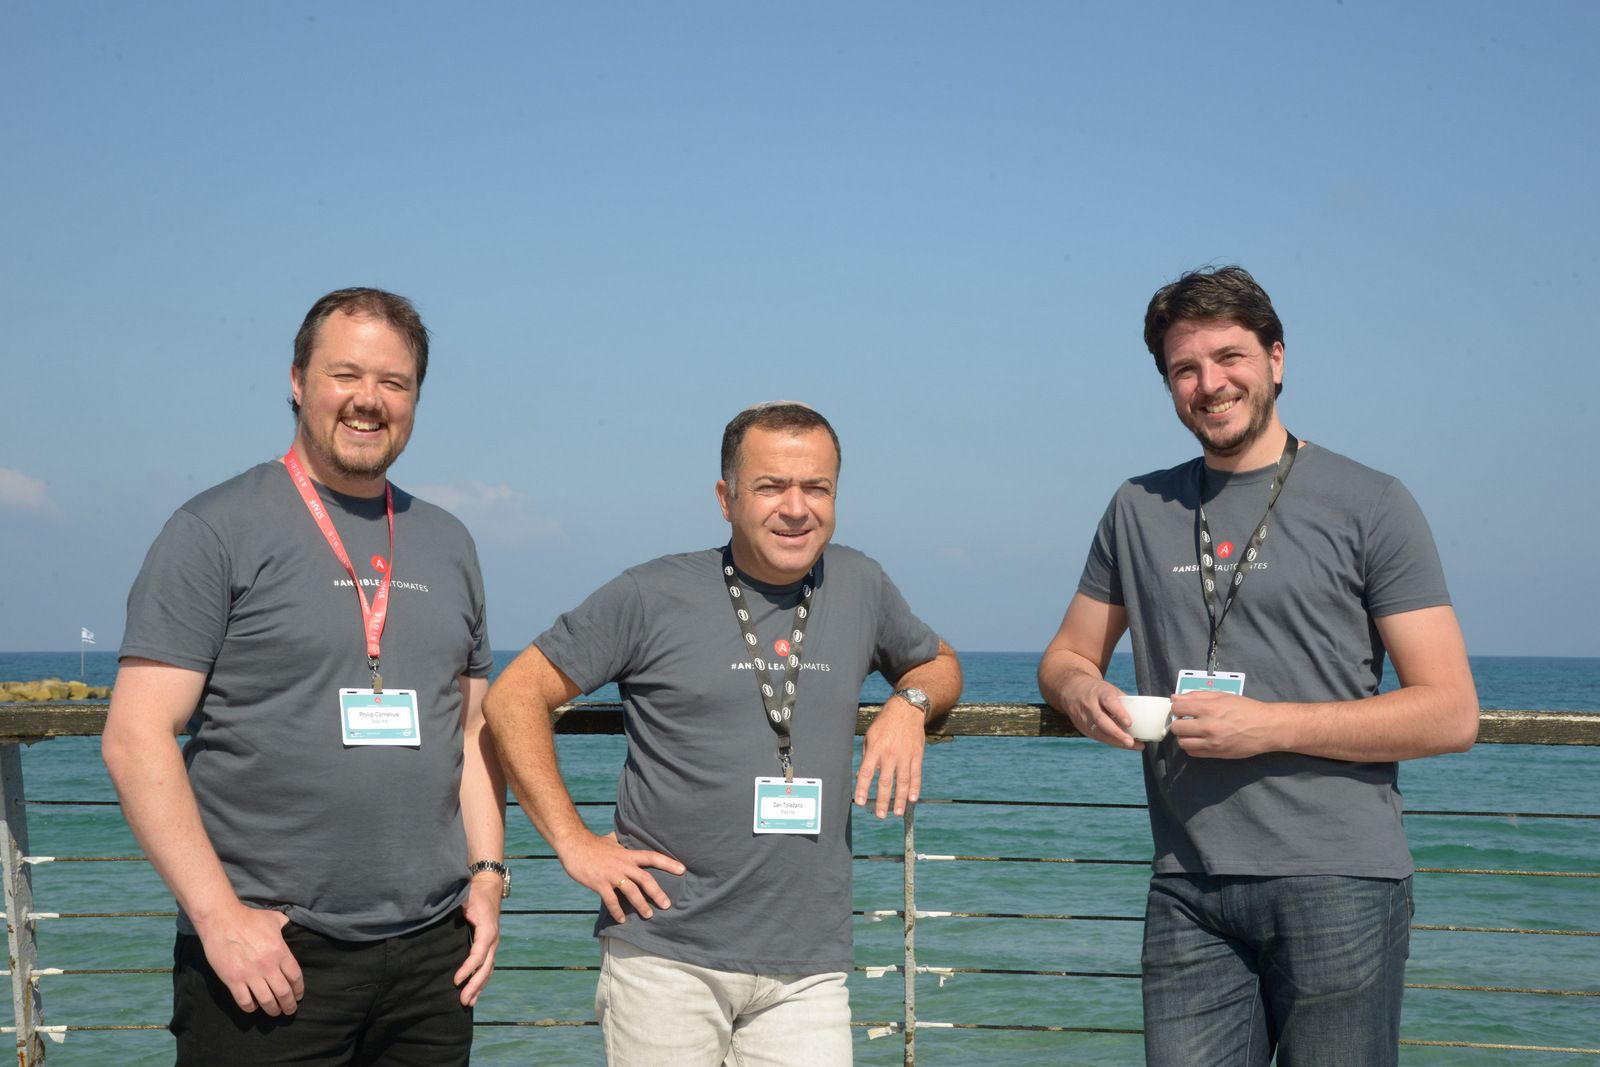 עם הגב לים בנמל תל אביב: דן טולדנו (במרכז) עם אנשי Ansible by Red Hat שהגיעו להרצות בכנס - ג'וש גינסברג, הארכיטקט הראשי (משמאל), ופיל קורנליוס, ארכיטקט פתרונות מומחה בכיר בחברה. צילום: ליאת מנדל